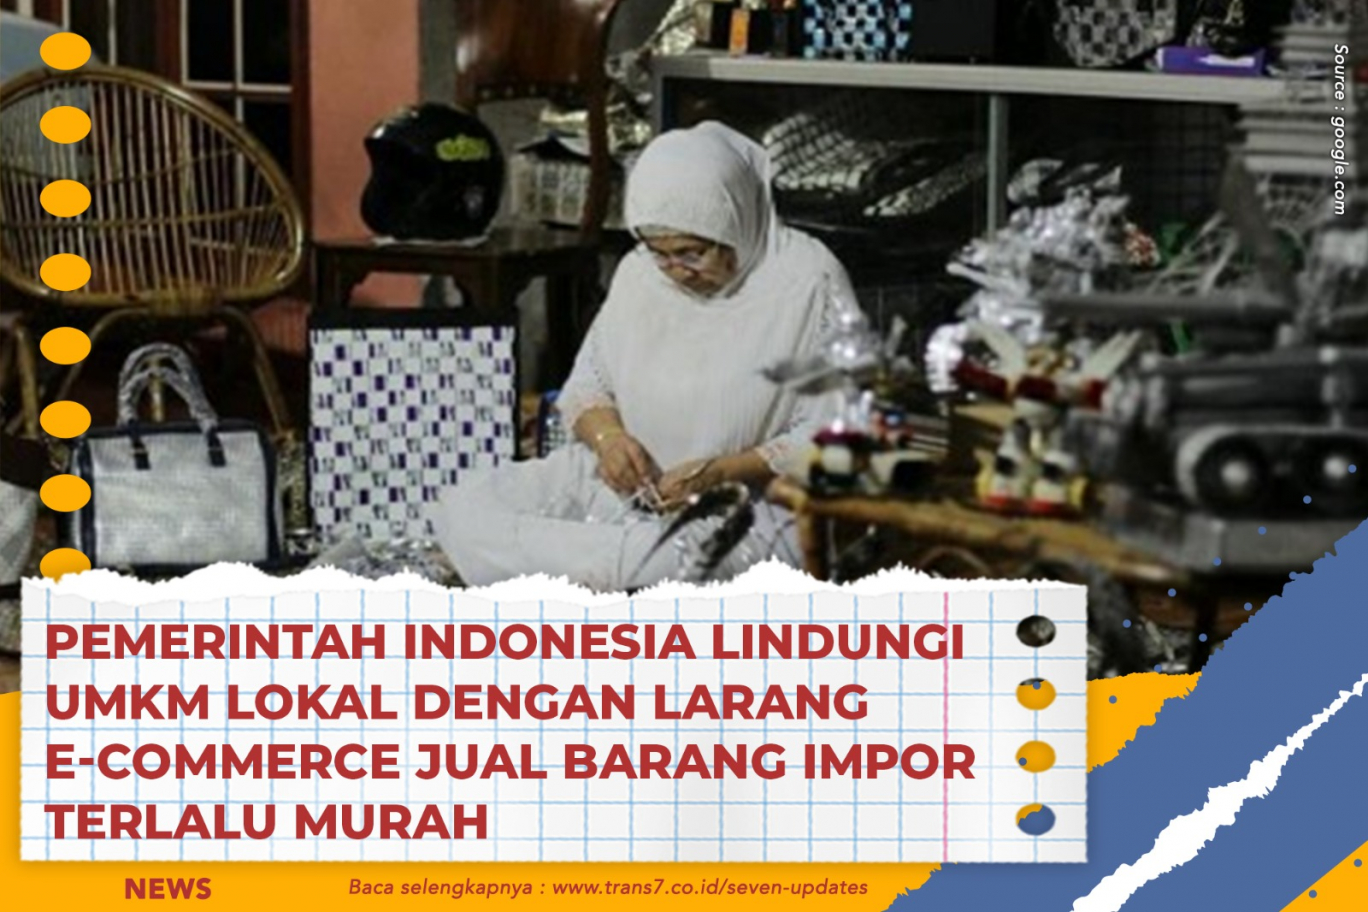 Pemerintah Indonesia Lindungi UMKM Lokal Dengan Larang E-Commerce Jual Barang Impor Terlalu Murah